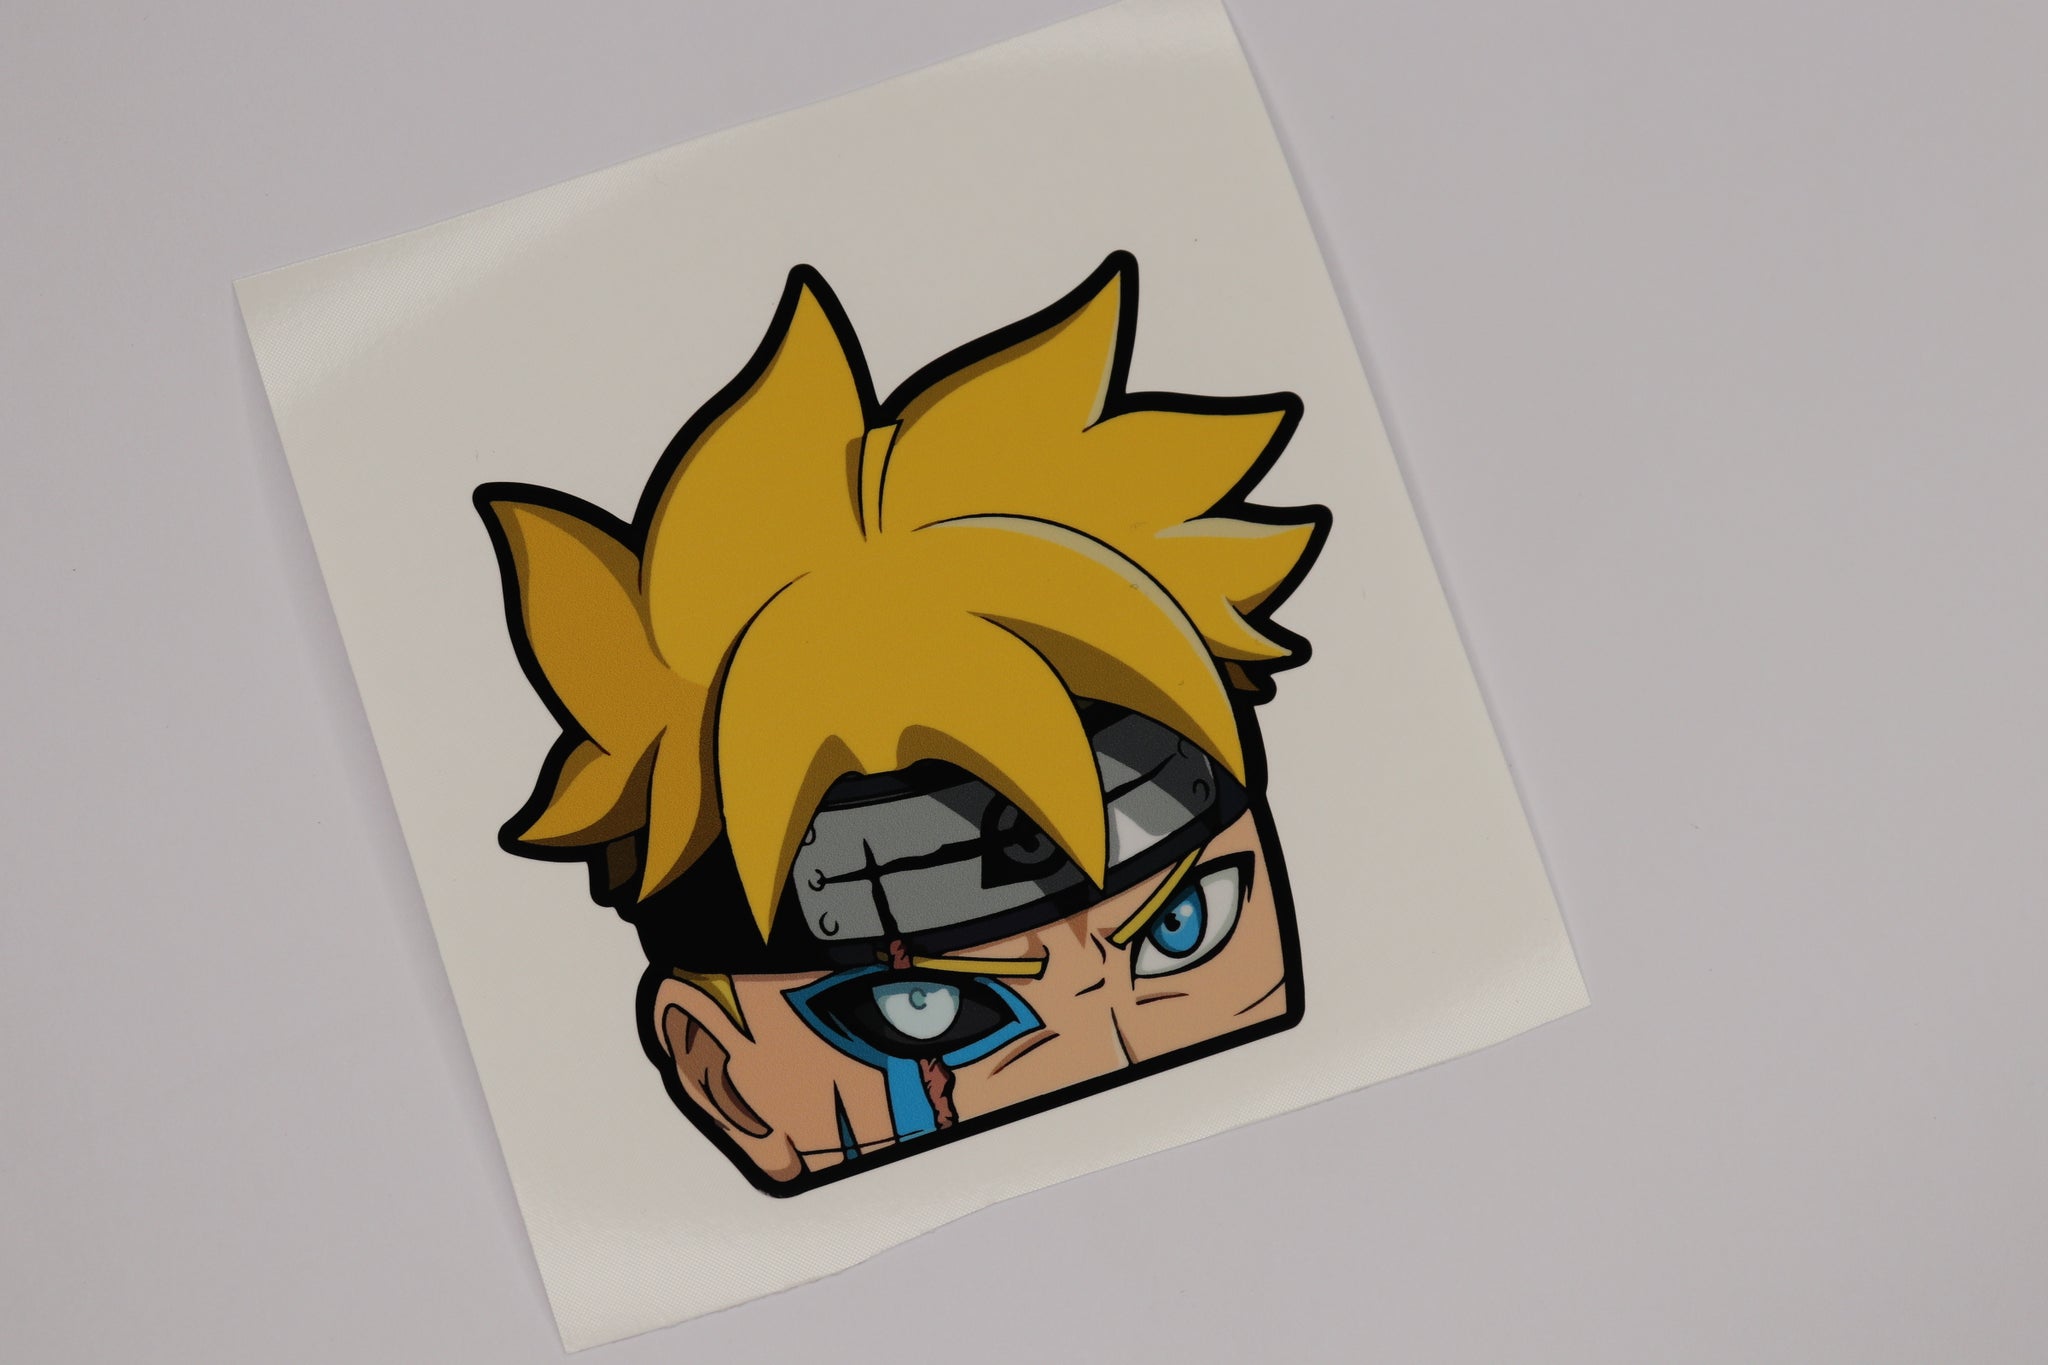 Naruto Peeker Sticker